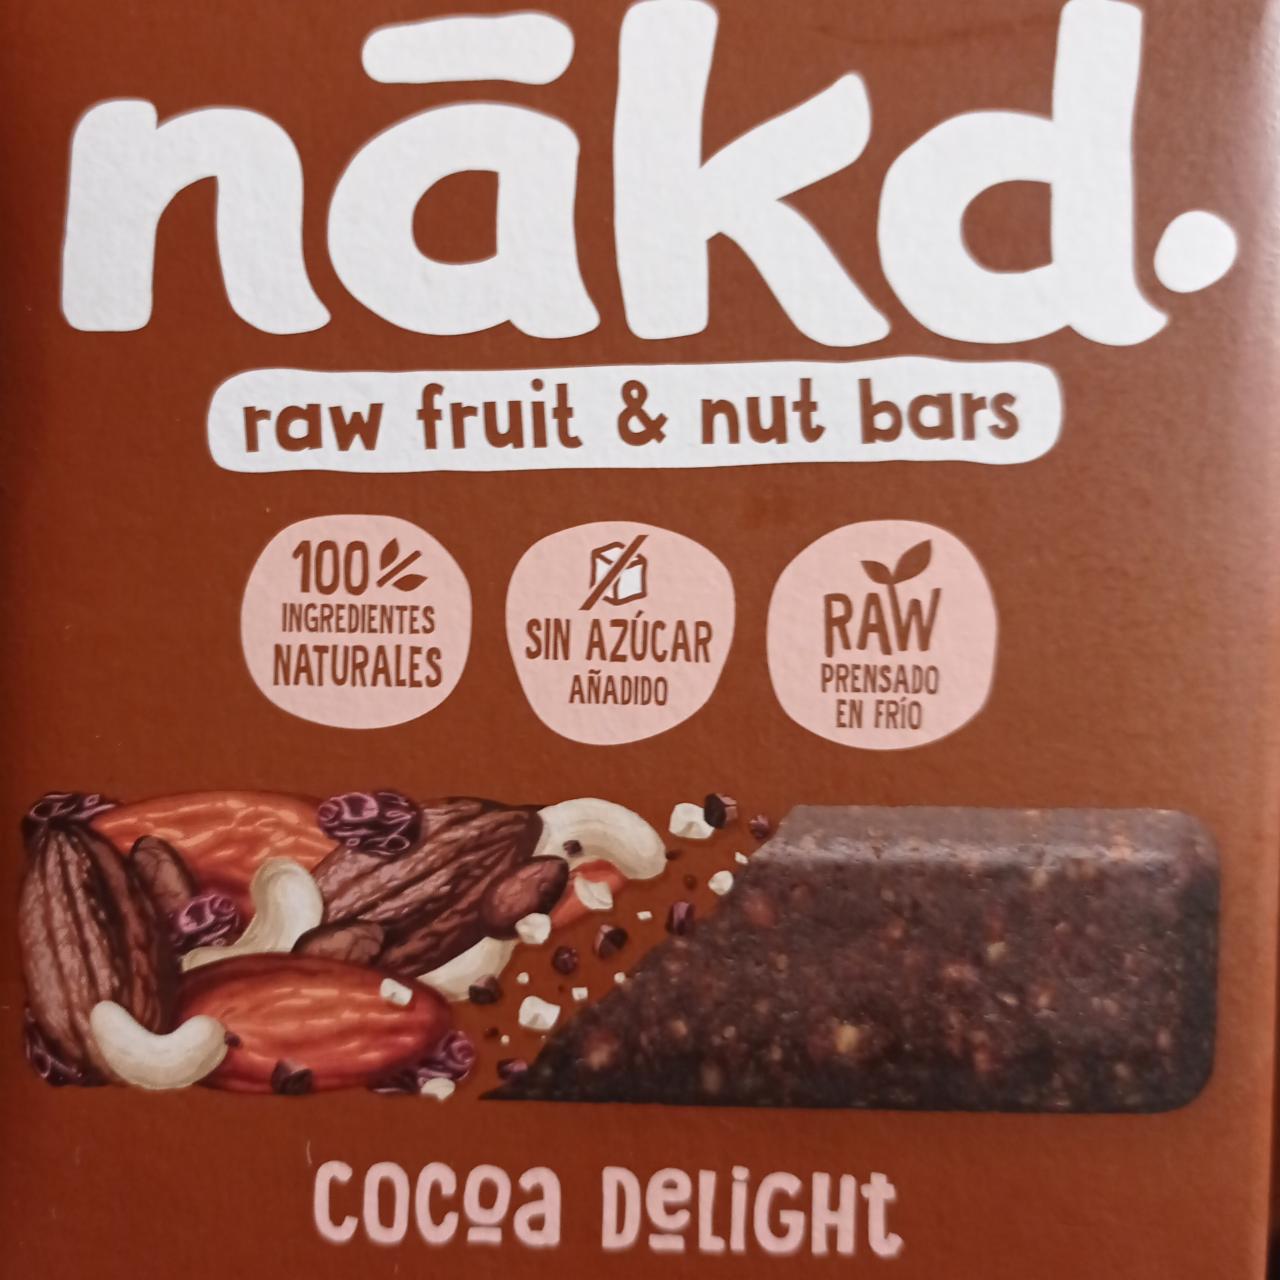 Фото - Батончики фруктово-ореховые из какао 100% натуральные без добавления сахара Cocoa Delight Nakd